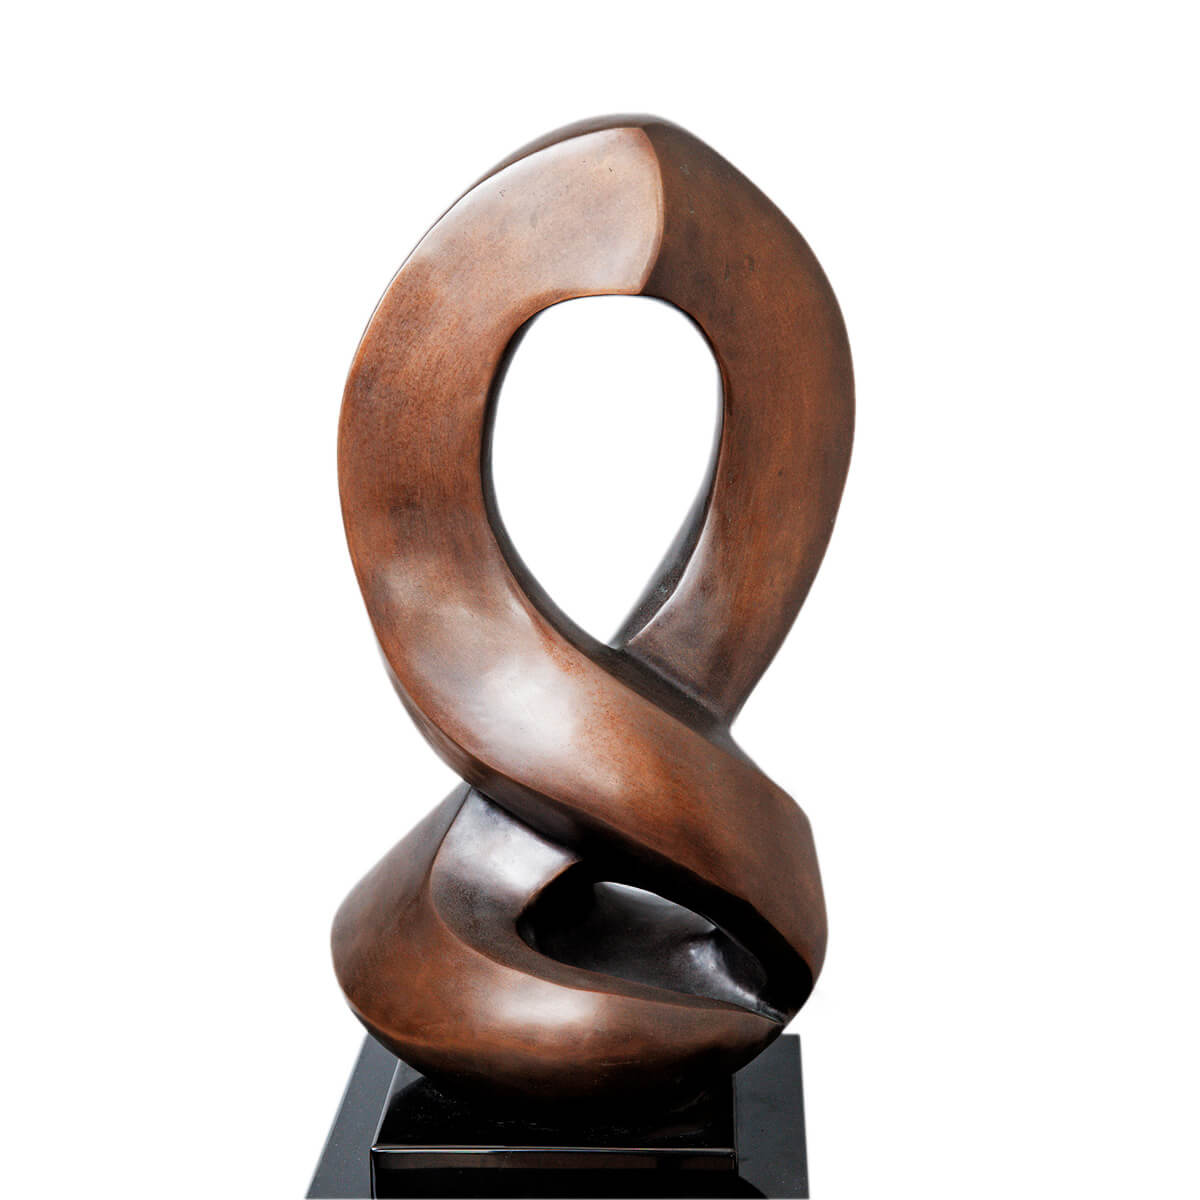 Robert-Helle-Sculpture-Gallery-Music-2-1200x1200